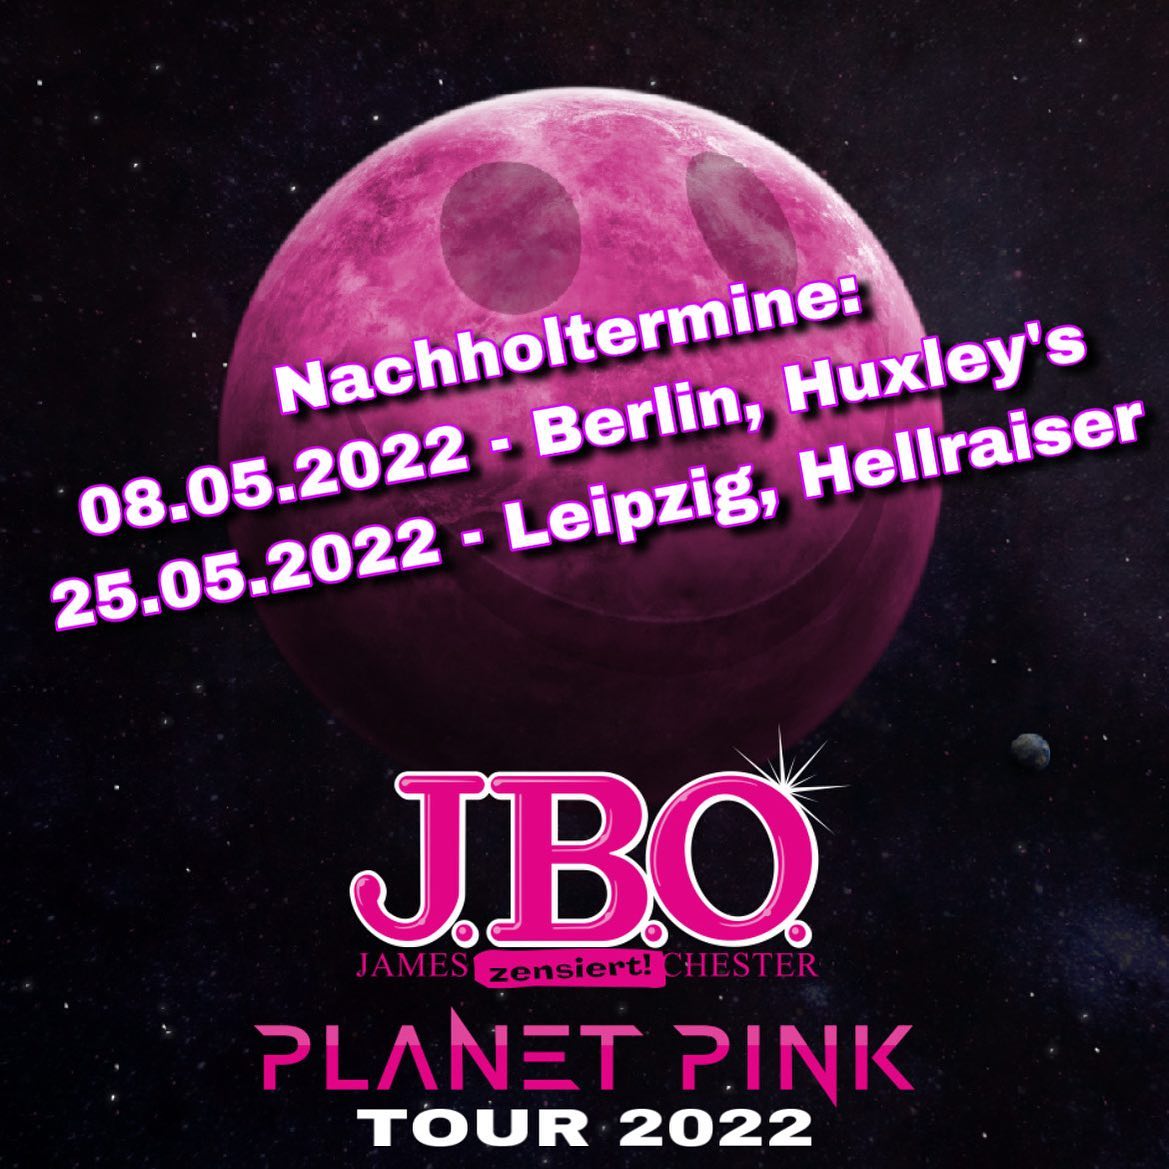 Instagram:Wir sind froh, dass wir für beide Konzerte nun Nachholtermine gefunden haben! Also: 08.05.2022 - Berlin, Huxley‘s 25.05.